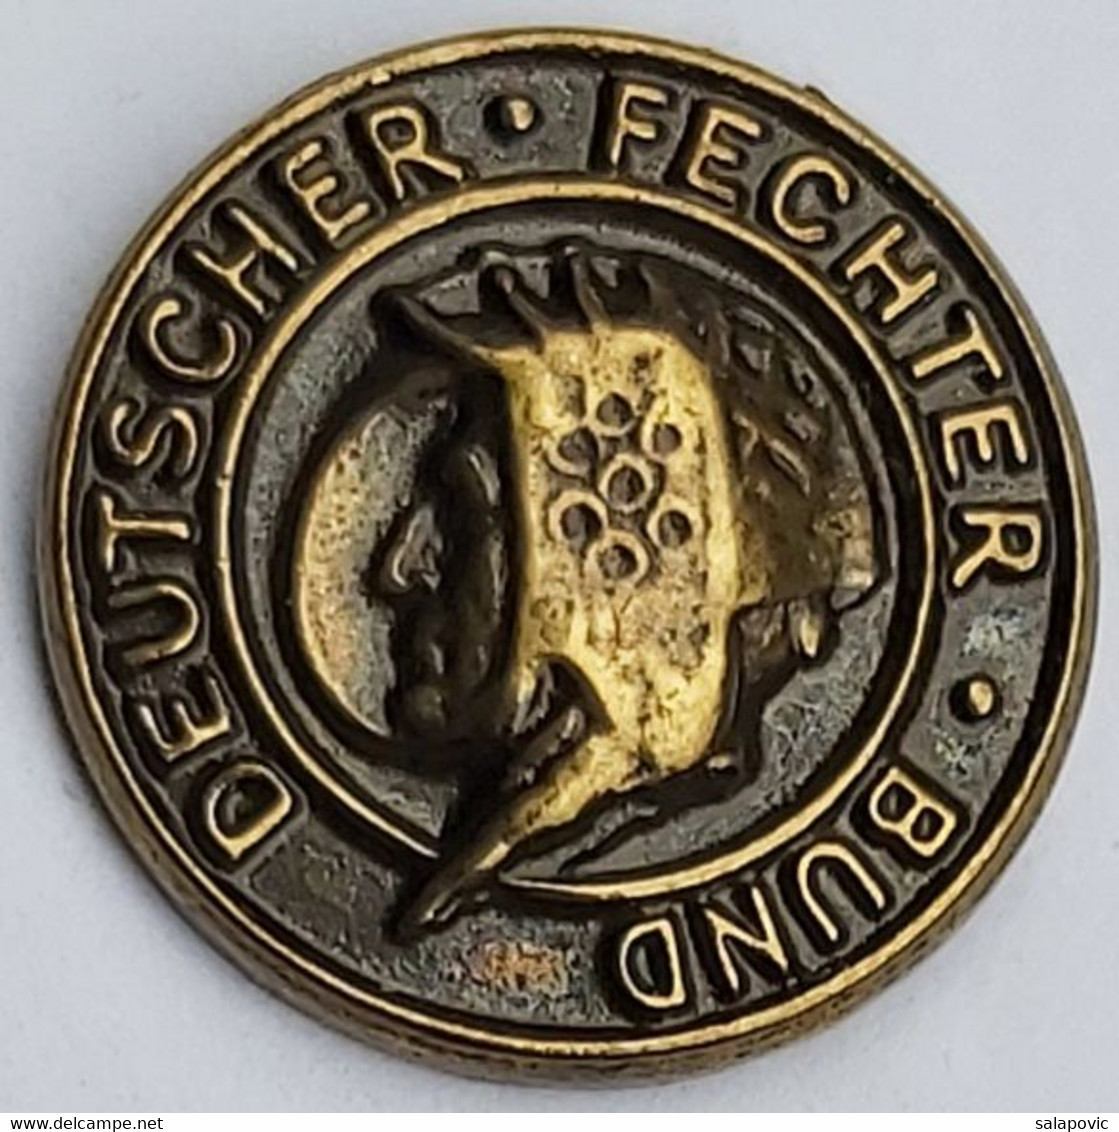 Deutsche Fechter-Bund Germany Fencing Federation Association Union PINS A10/10 - Scherma